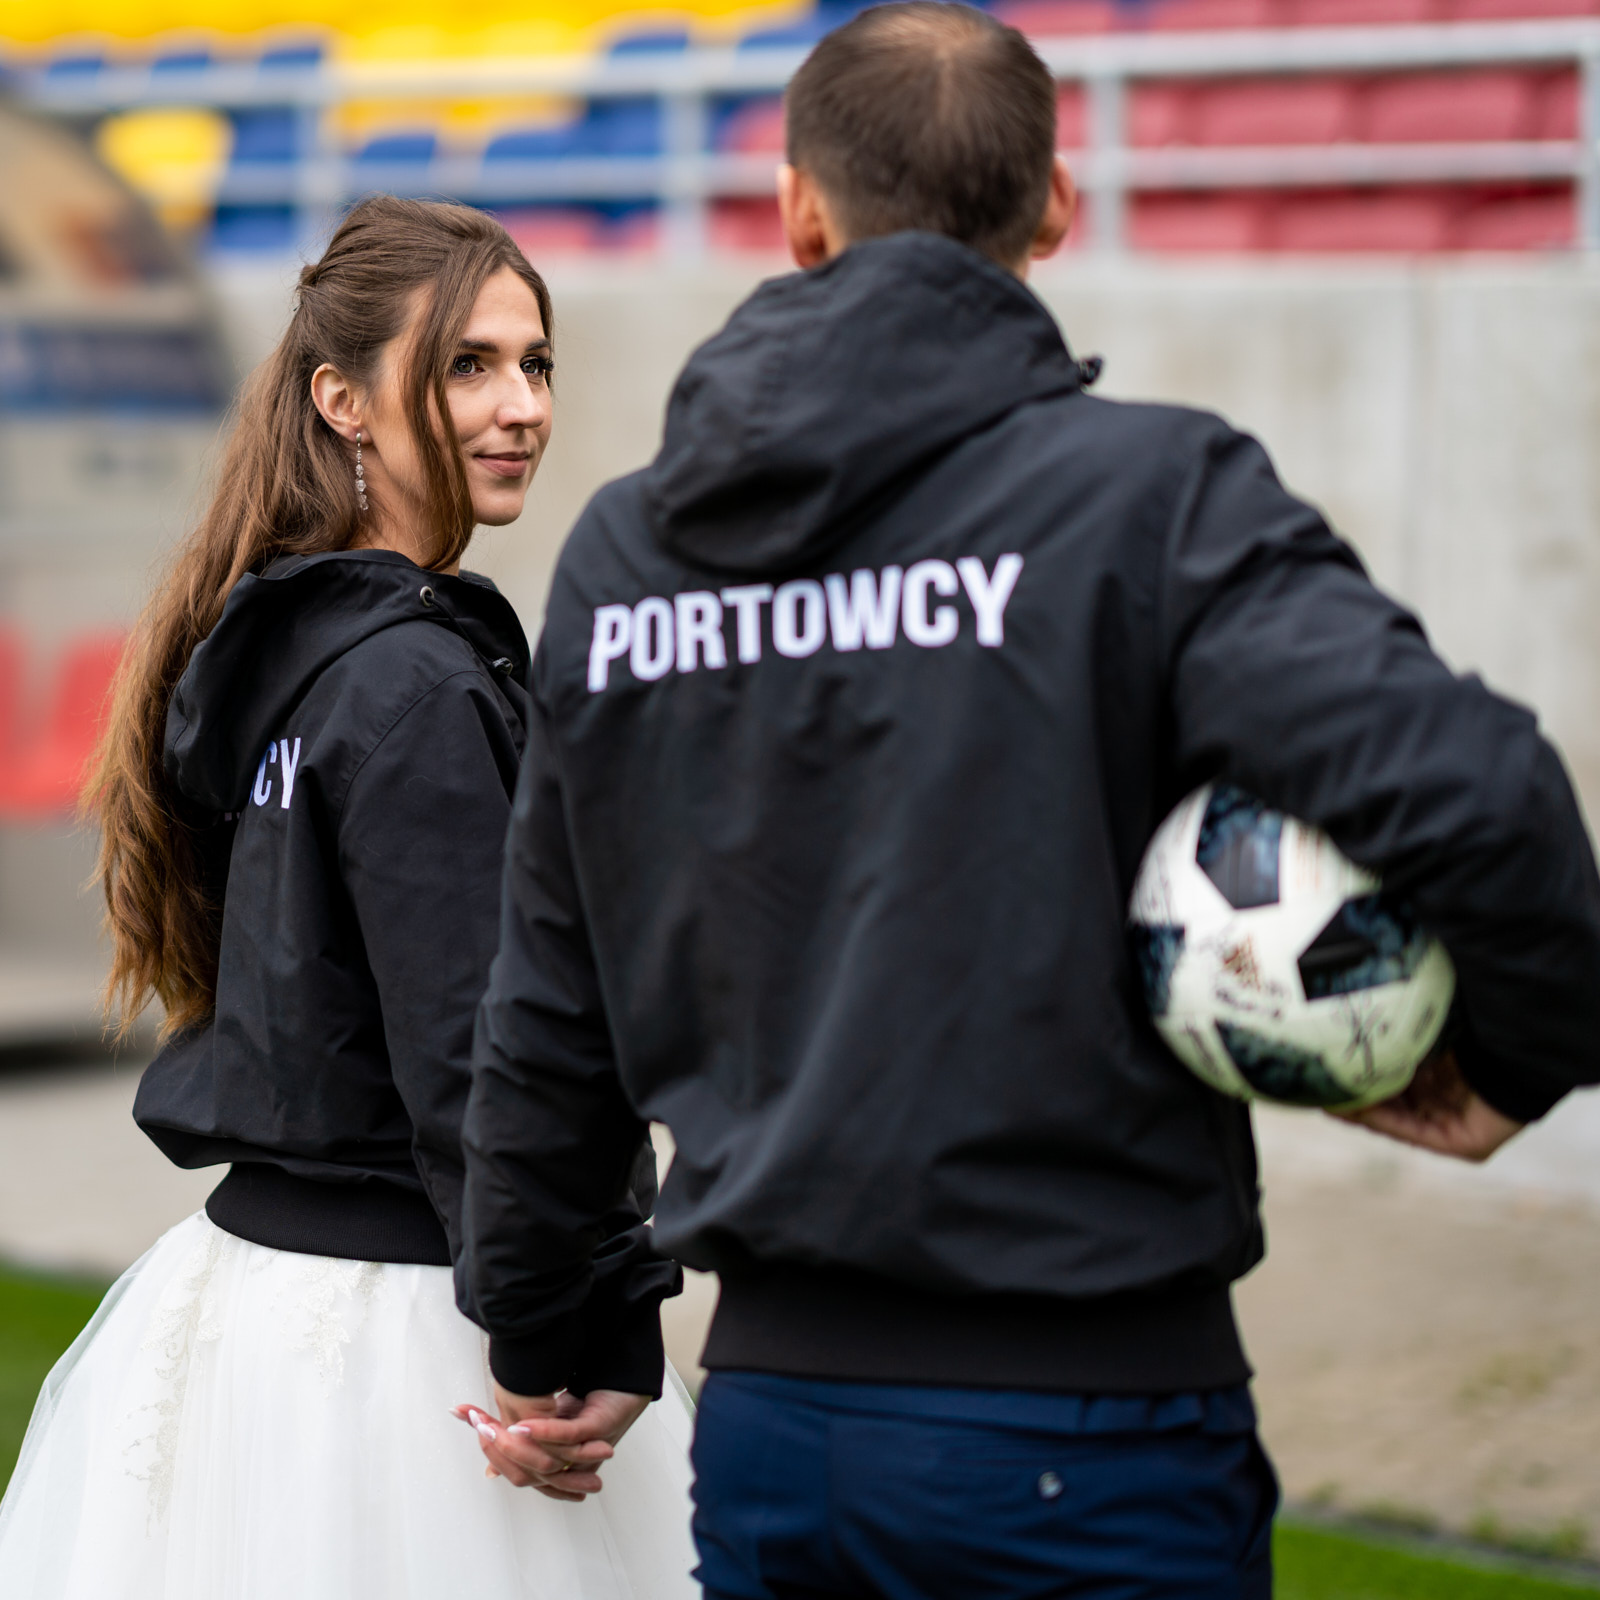 Agnieszka i Sławek - sesja ślubna na stadionie Pogoni